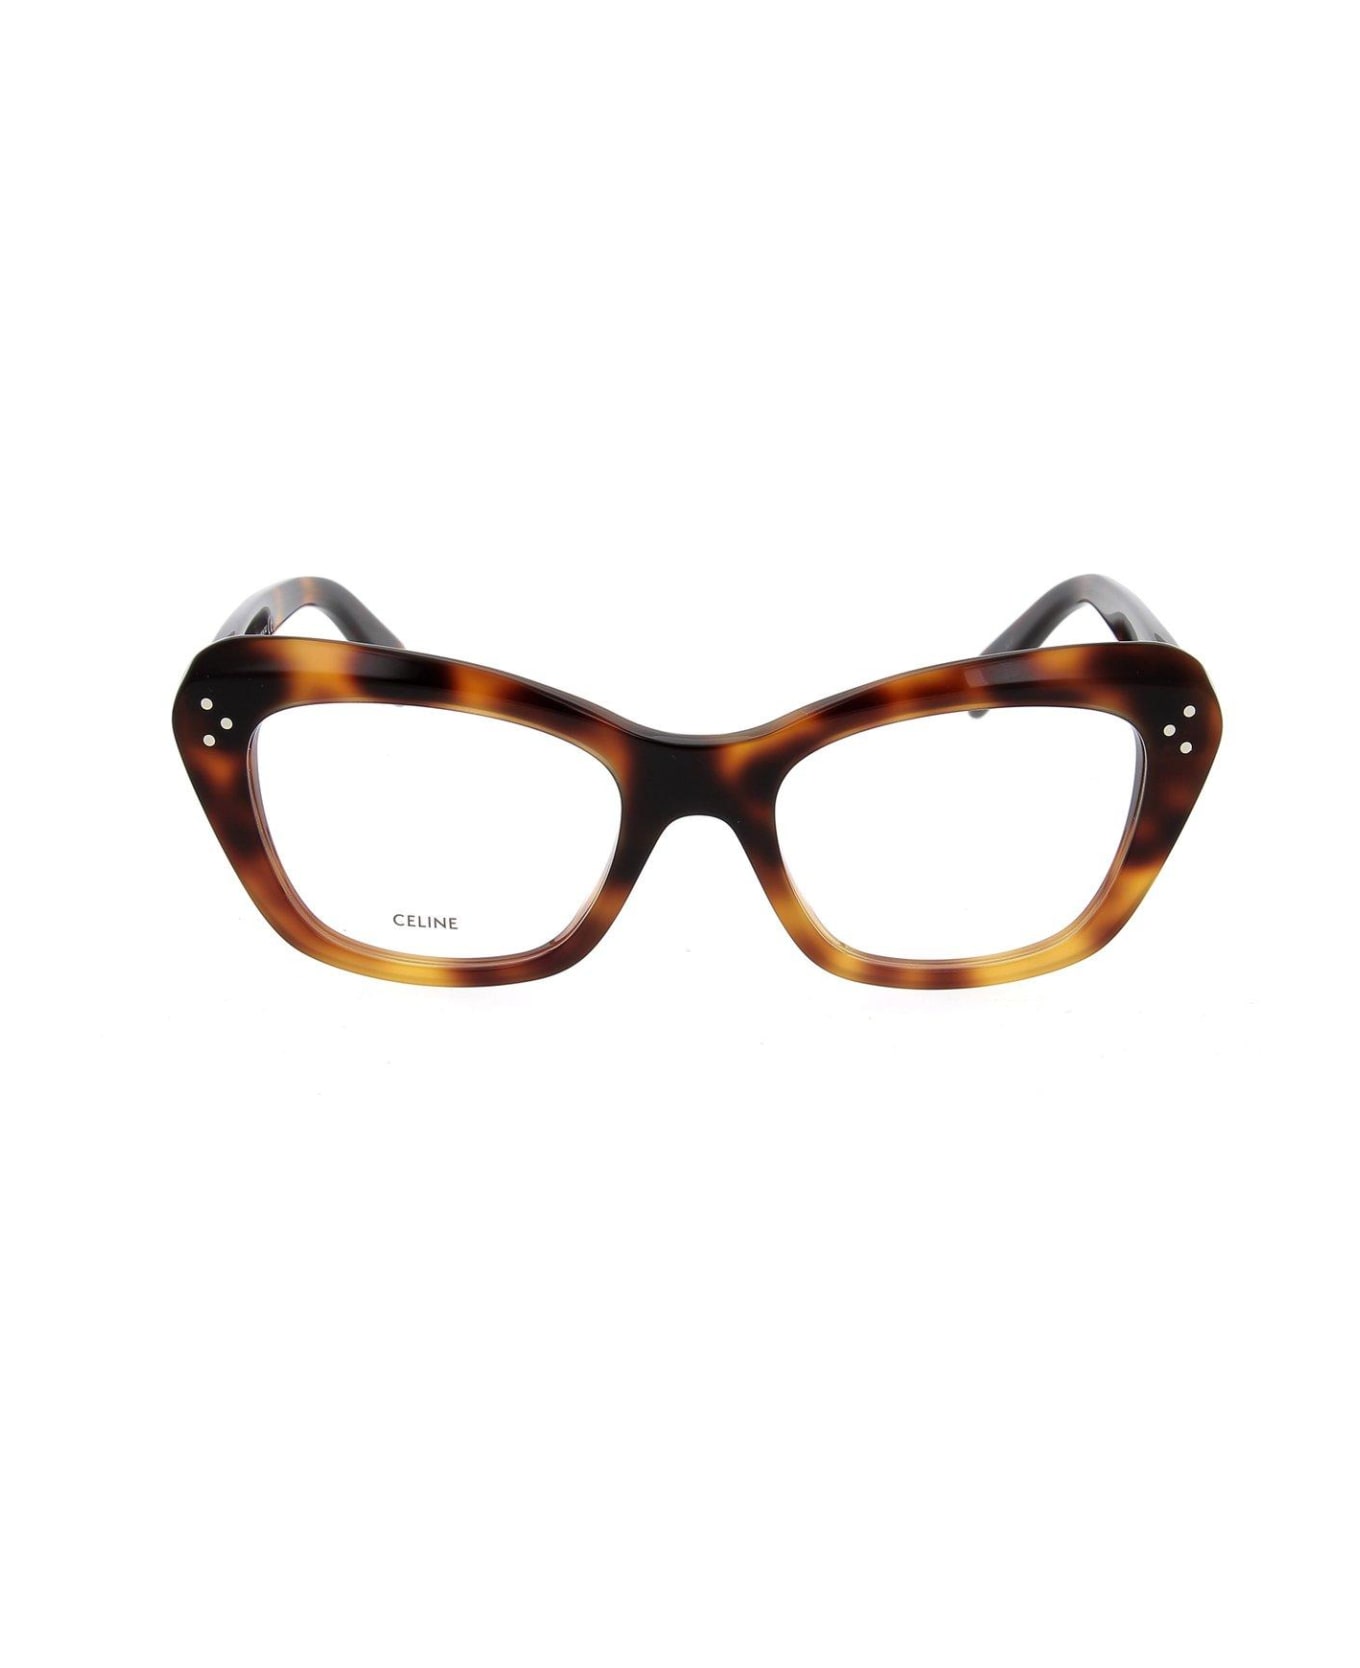 Celine Cat-eye Glasses - 056 アイウェア